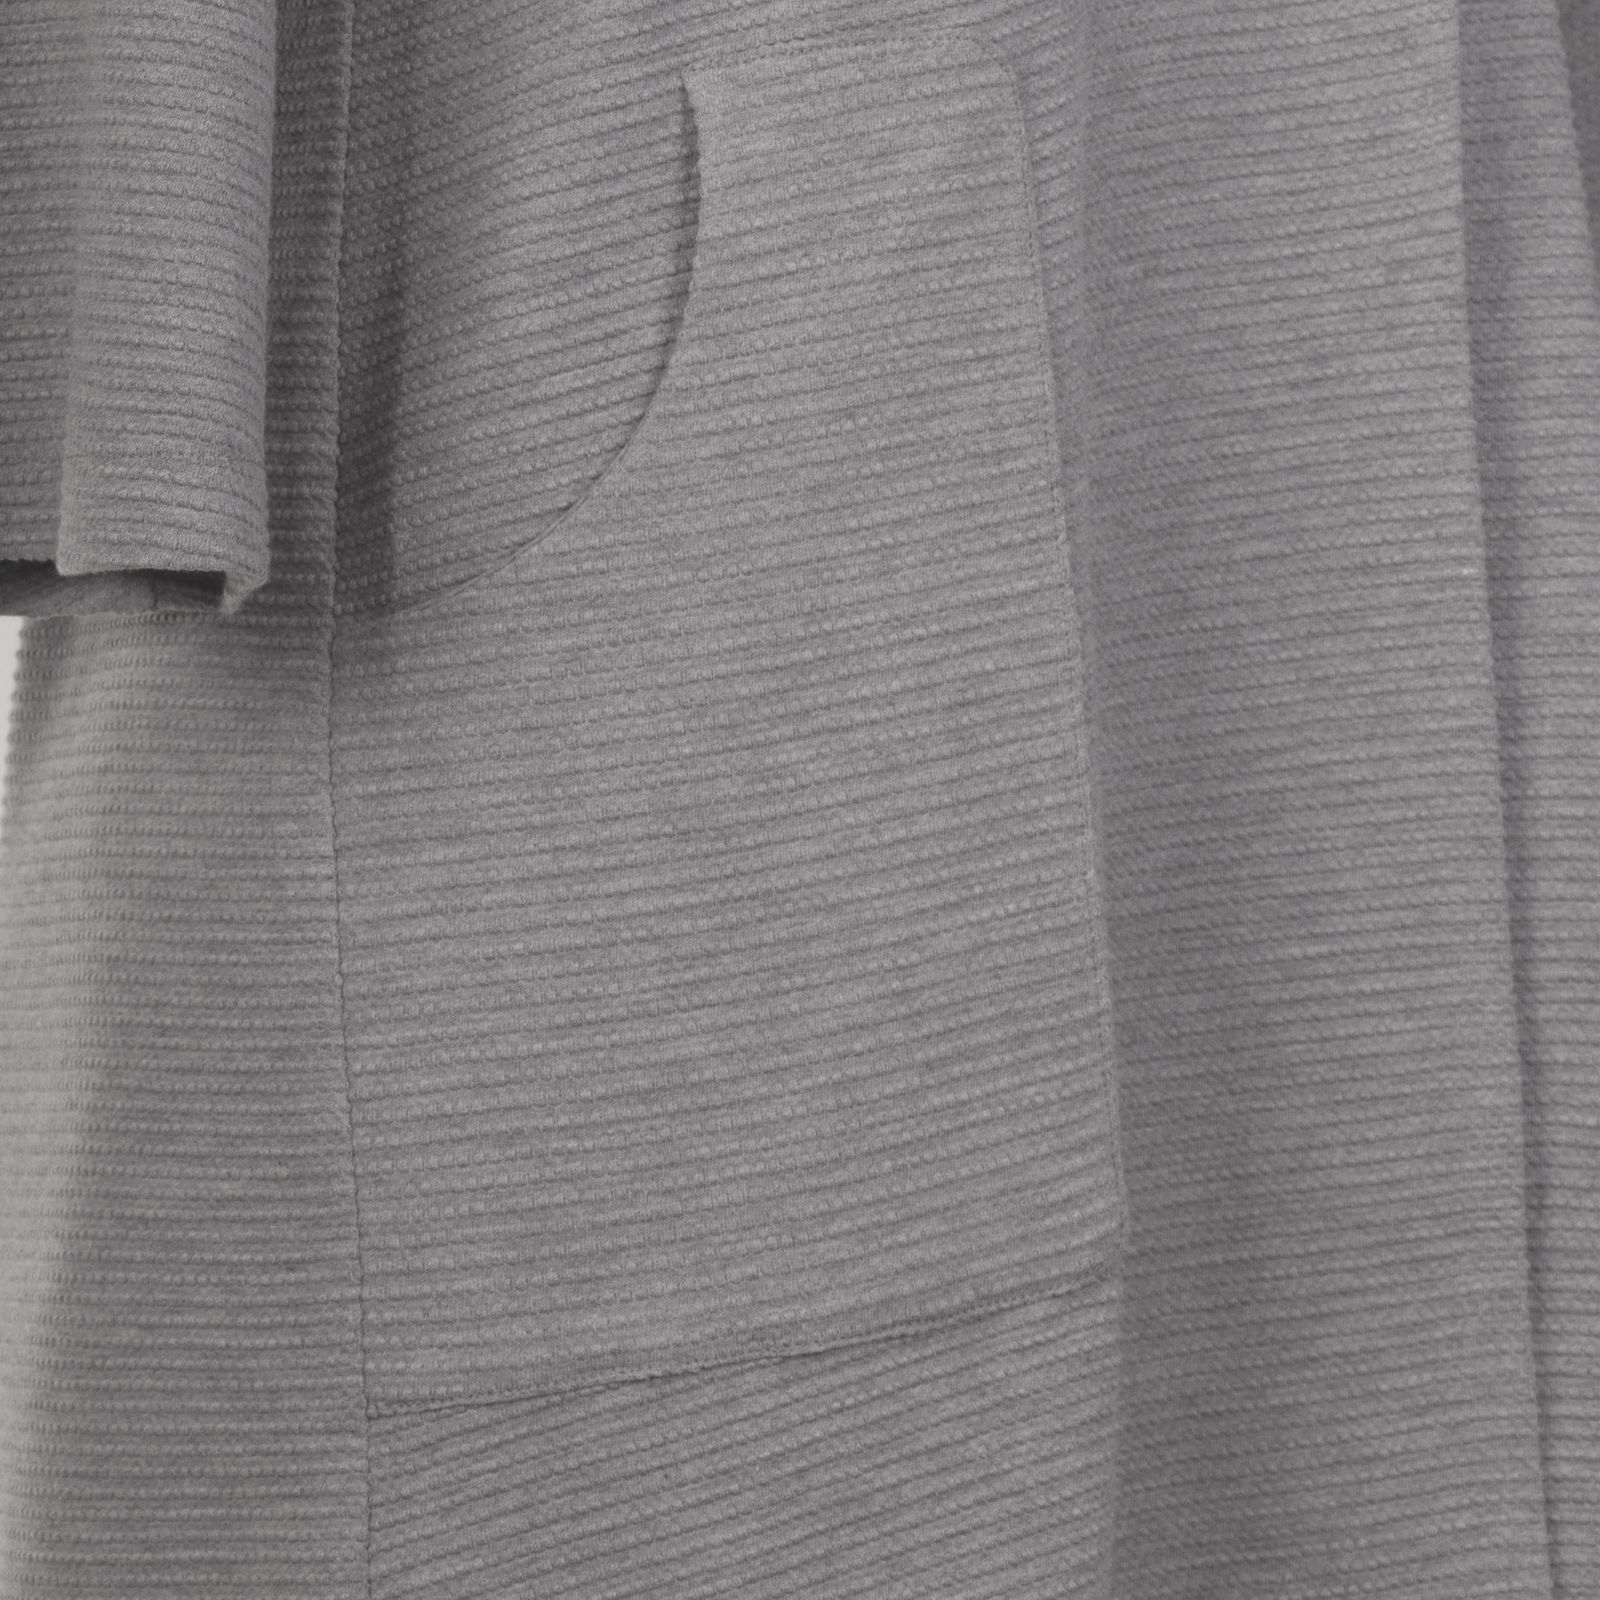 رویه بافت زنانه سیاوود مدل 7111201 - A-GRE رنگ طوسی -  - 6